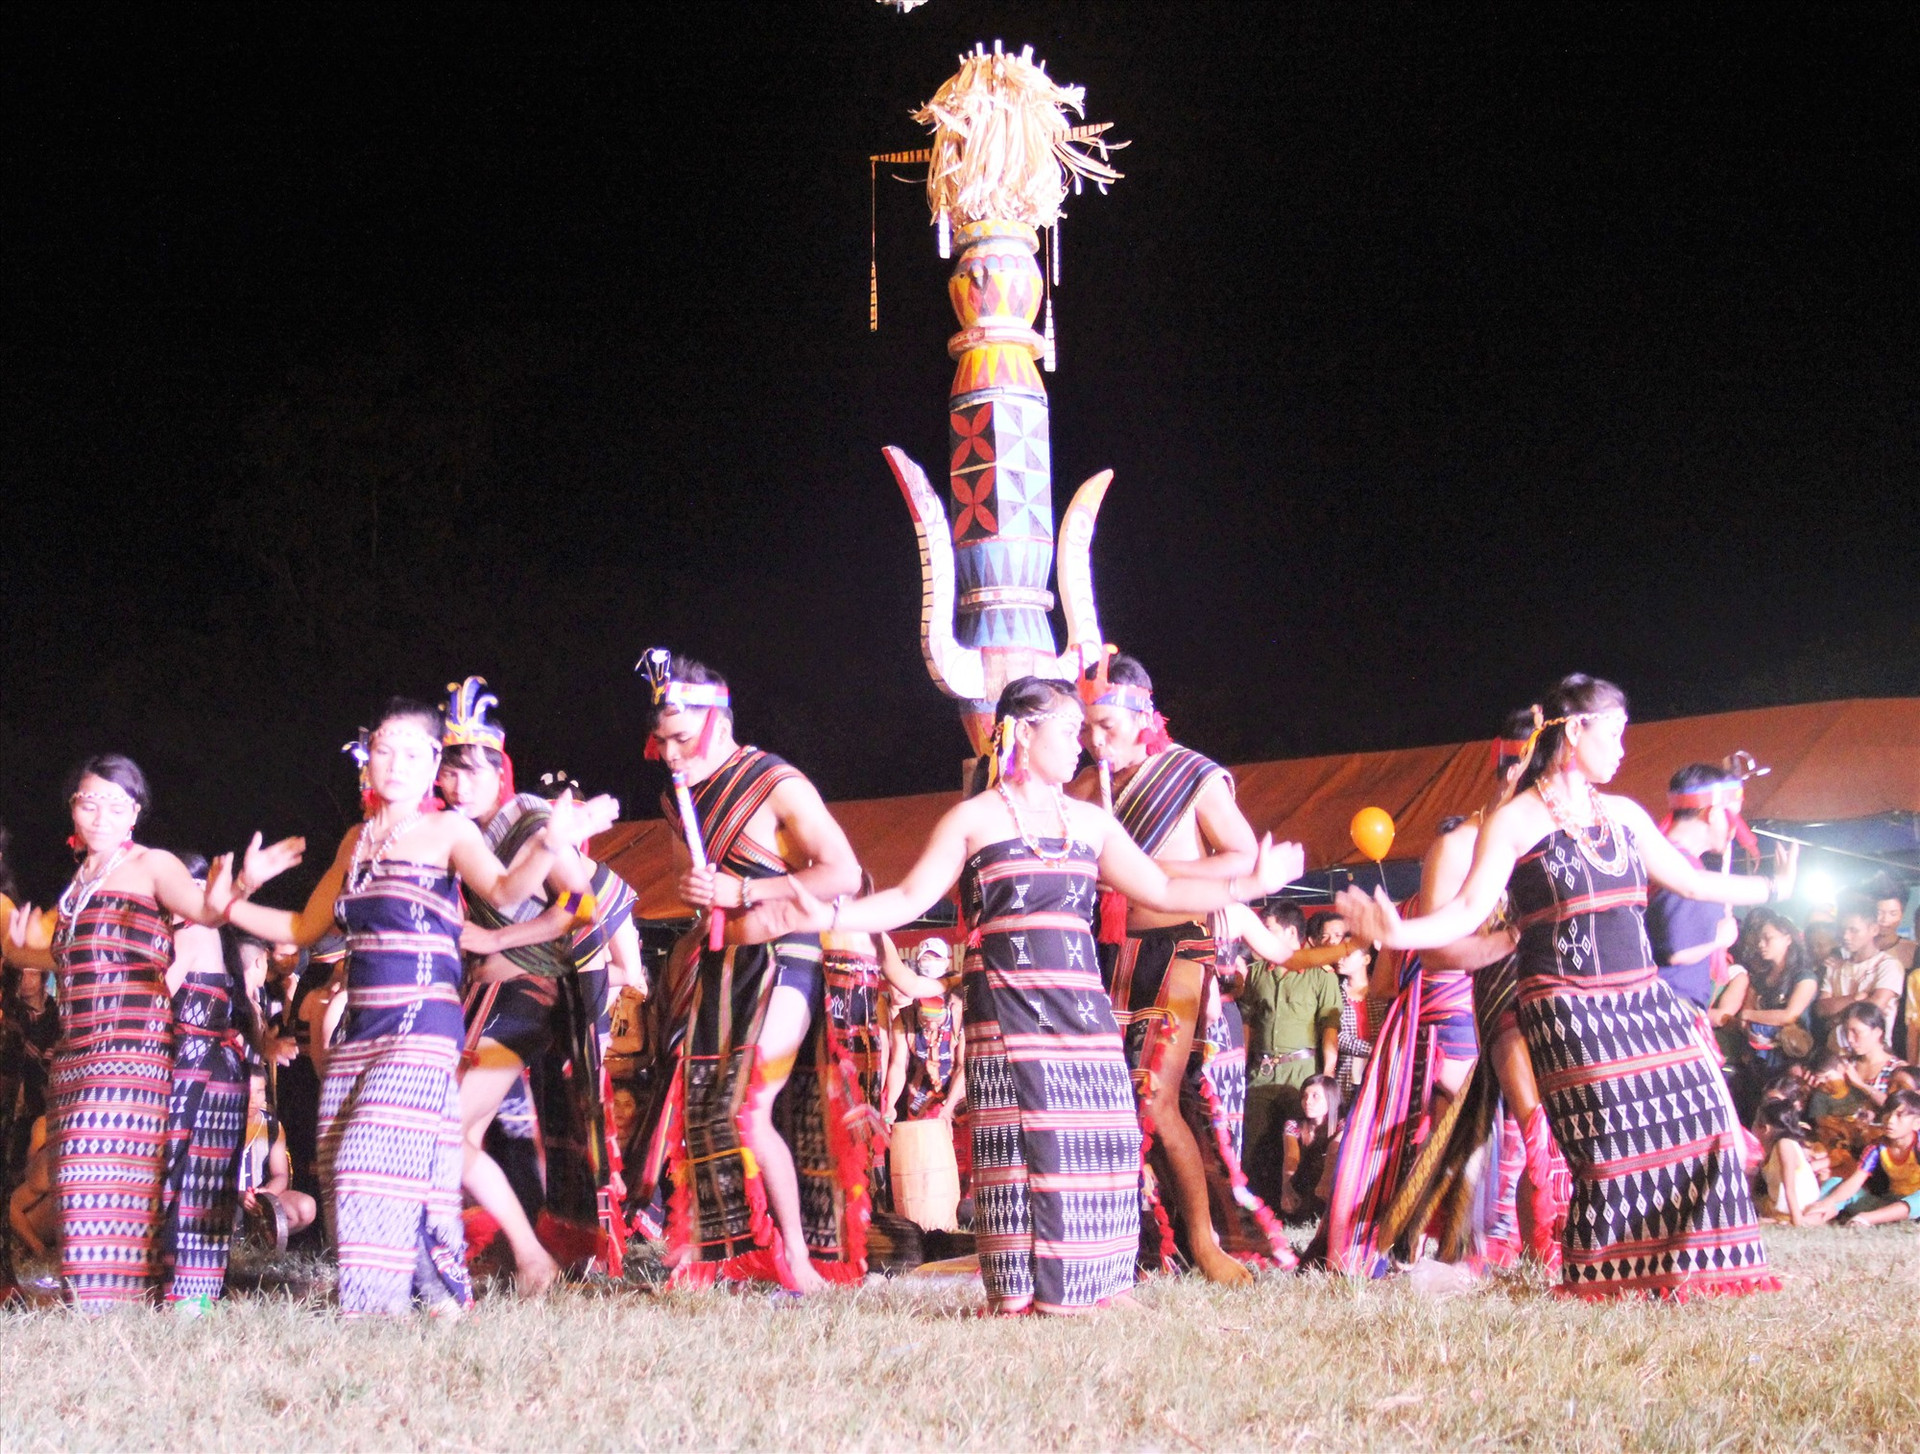 Liên hoan “Âm vang cồng chiêng” huyện Nam Giang được kỳ vọng như một cuộc trình diễn sắc màu văn hóa. Ảnh: ALĂNG NGƯỚC